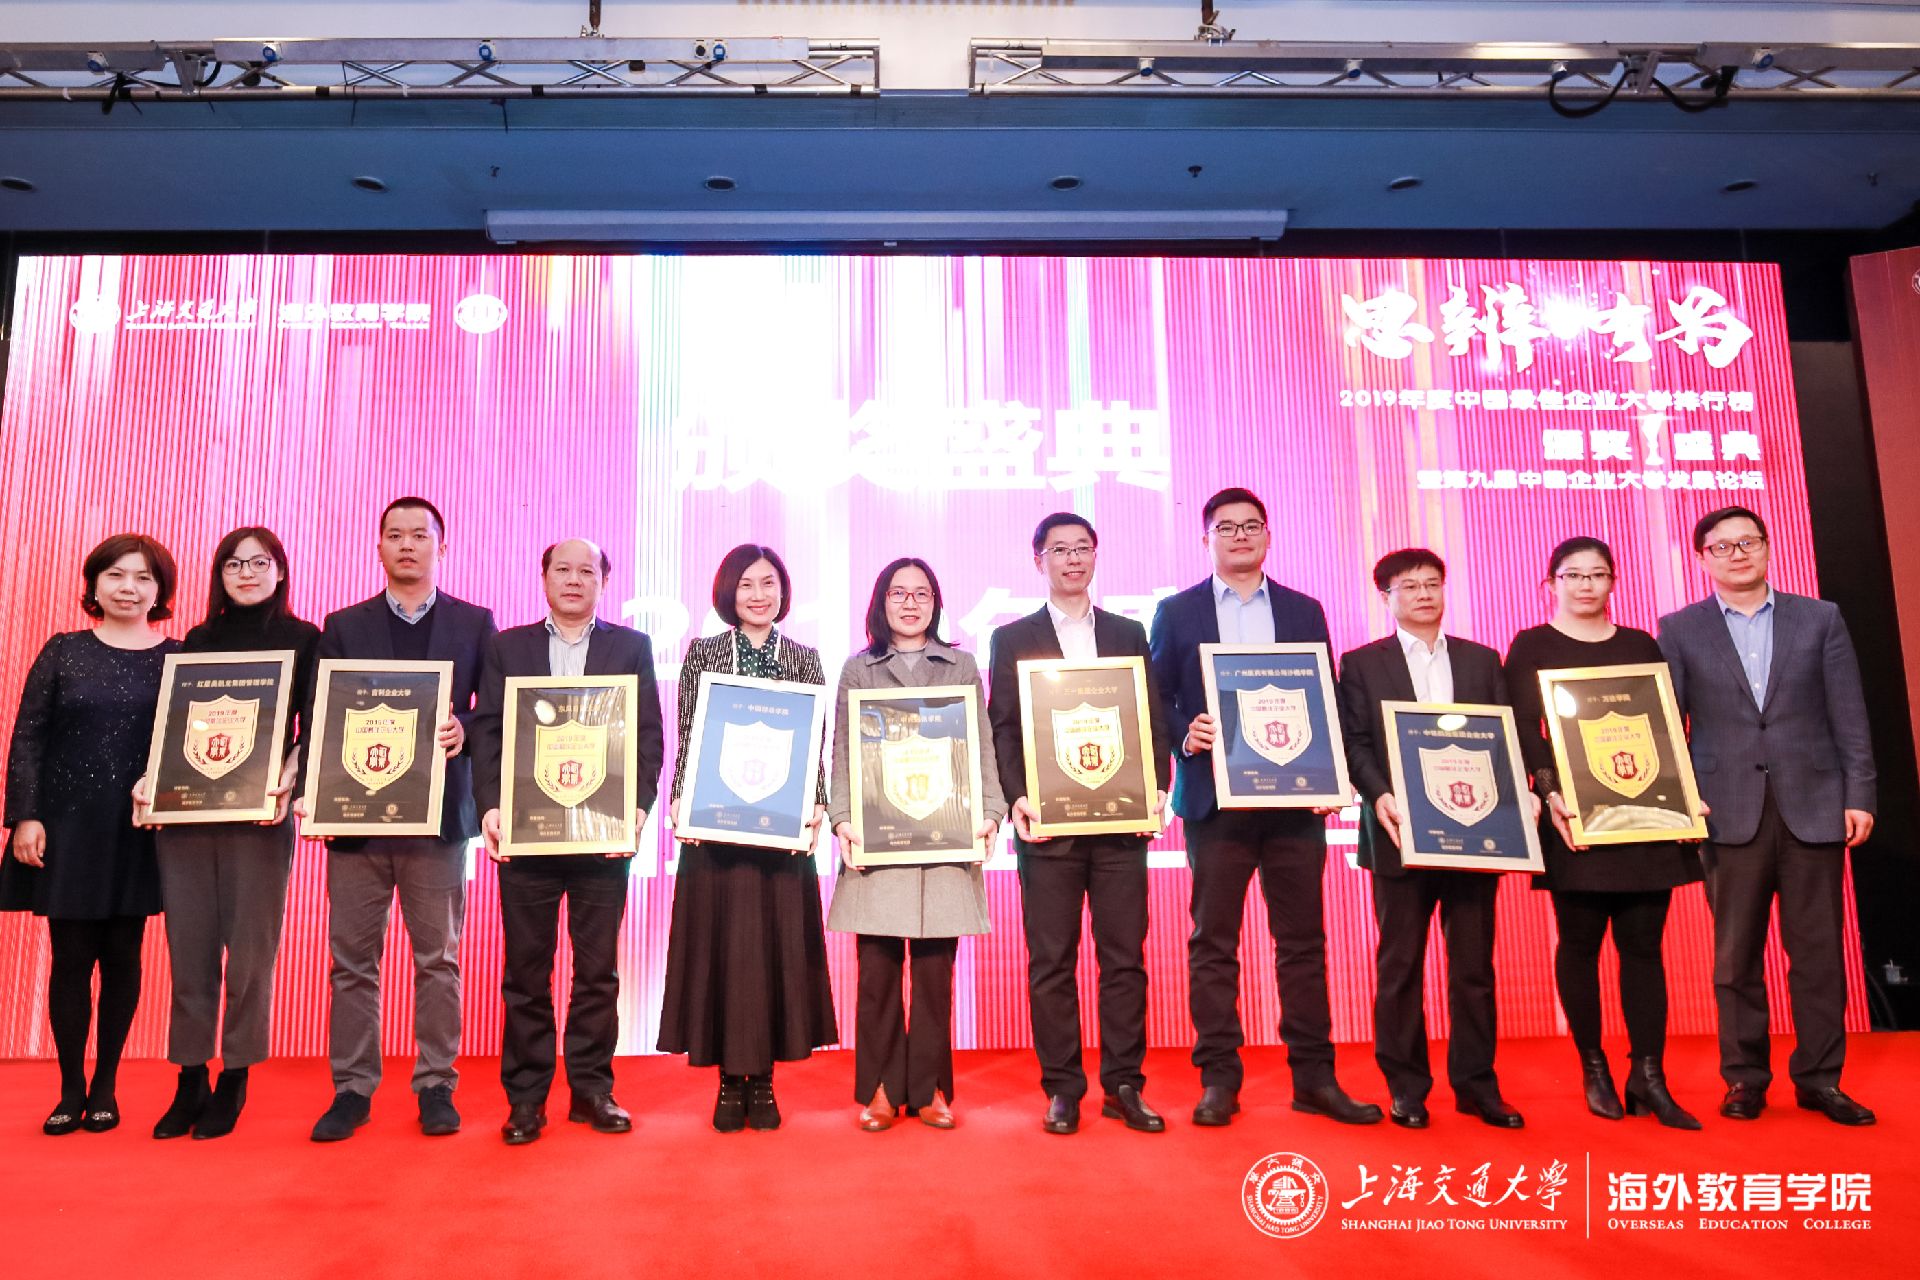 
湖南三一工业职业技术学院被评为“最佳企业大学”